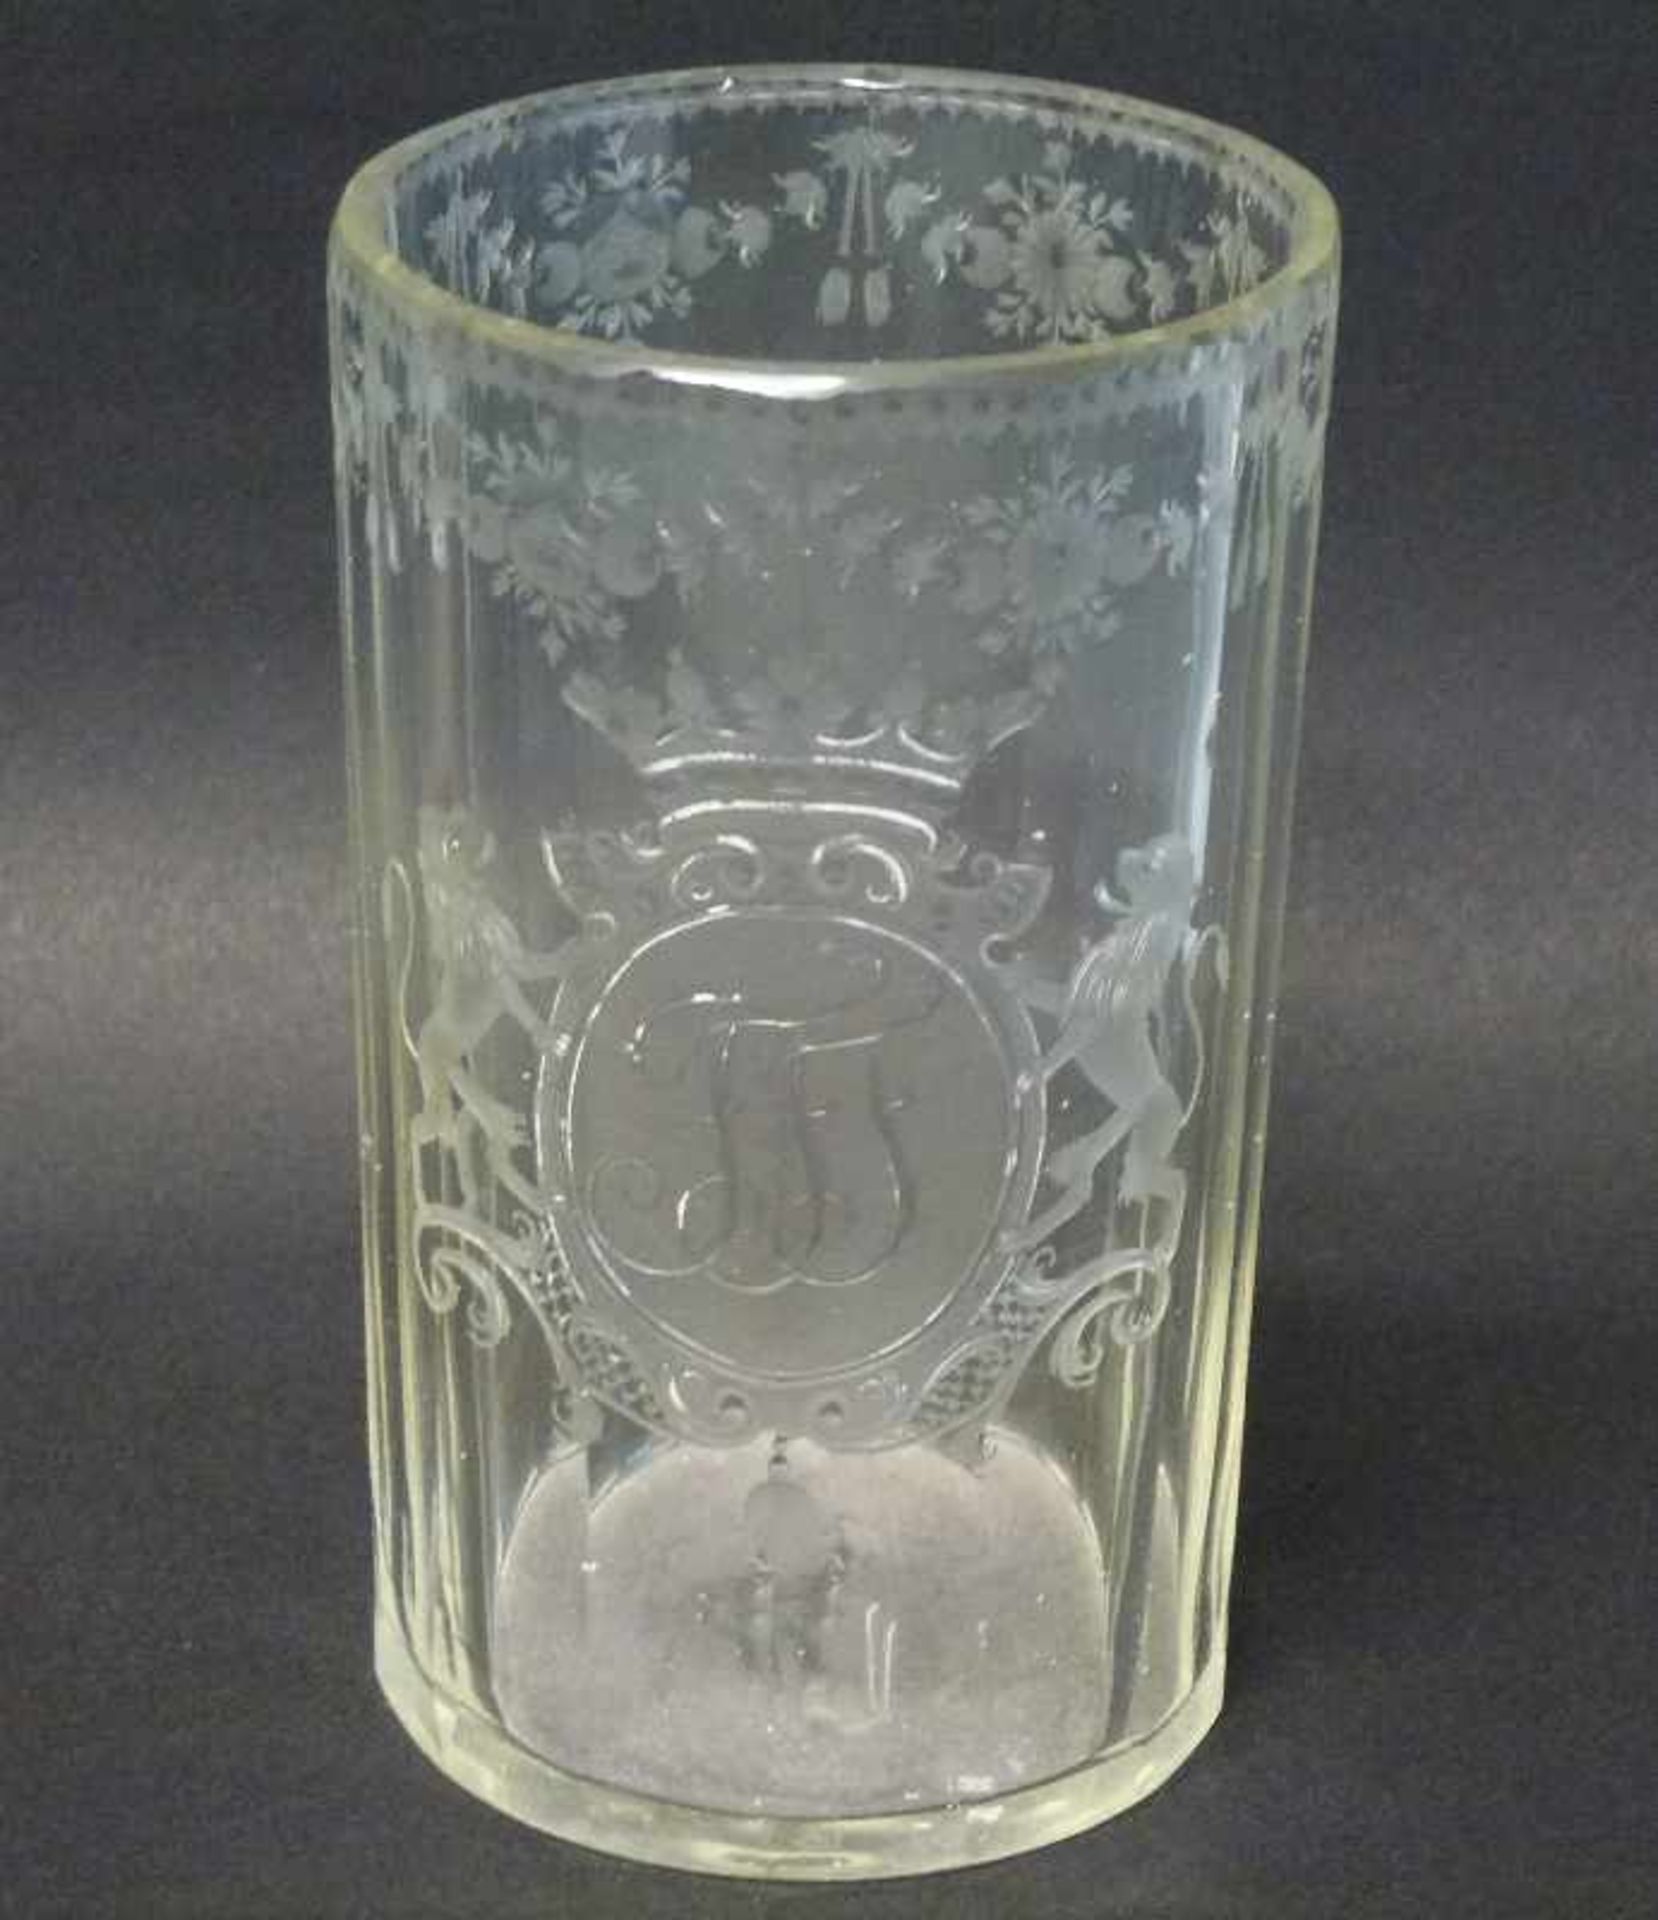 Barockglas, 2.Hälfte 18.Jh. klar, vielkantig zylindrisch, bekrönte Rocaille-Kartusche von Löwen